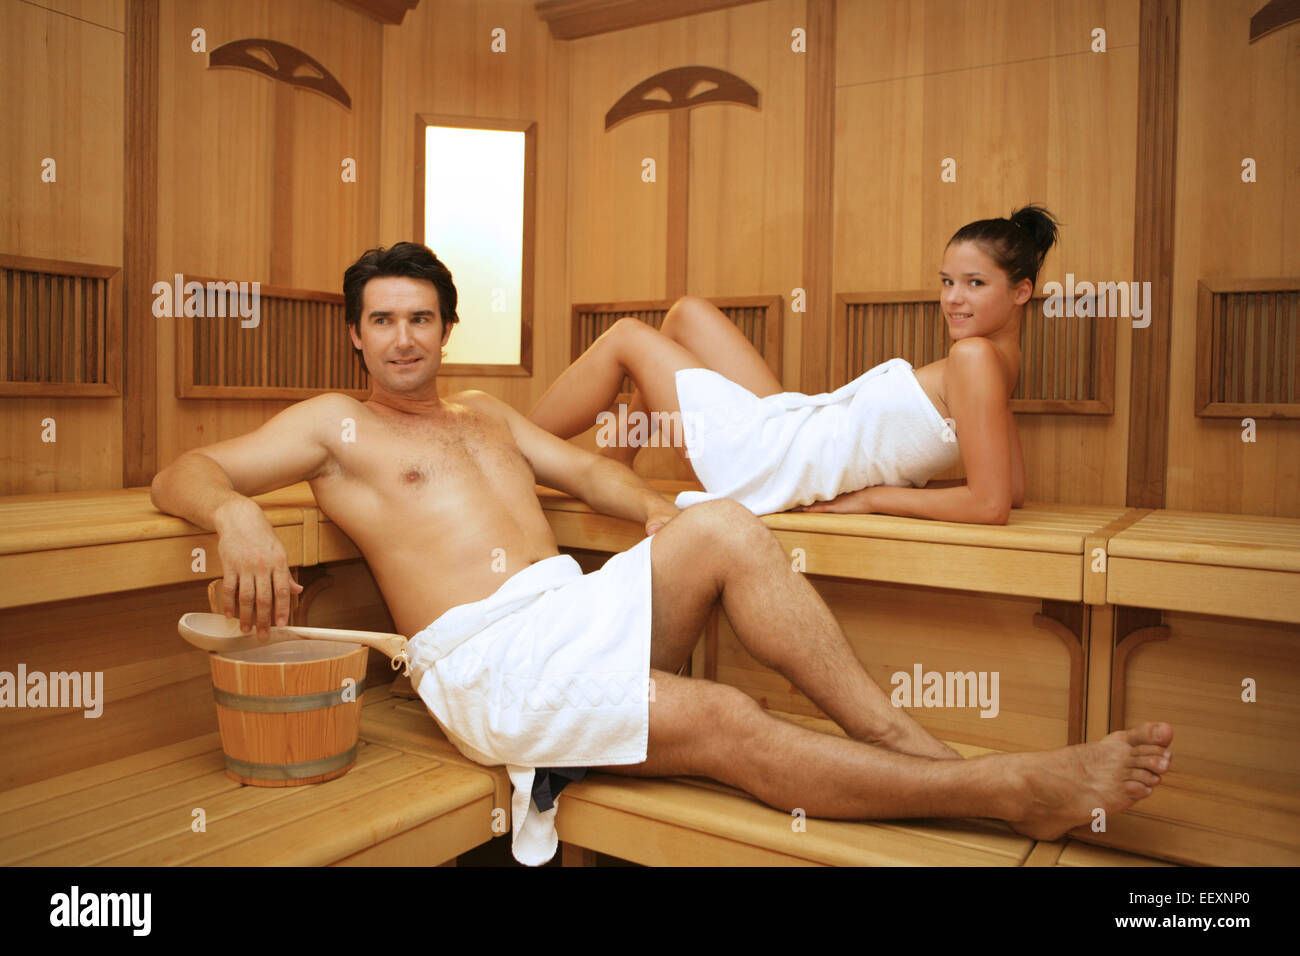 Sauna der nackt in junge schöne